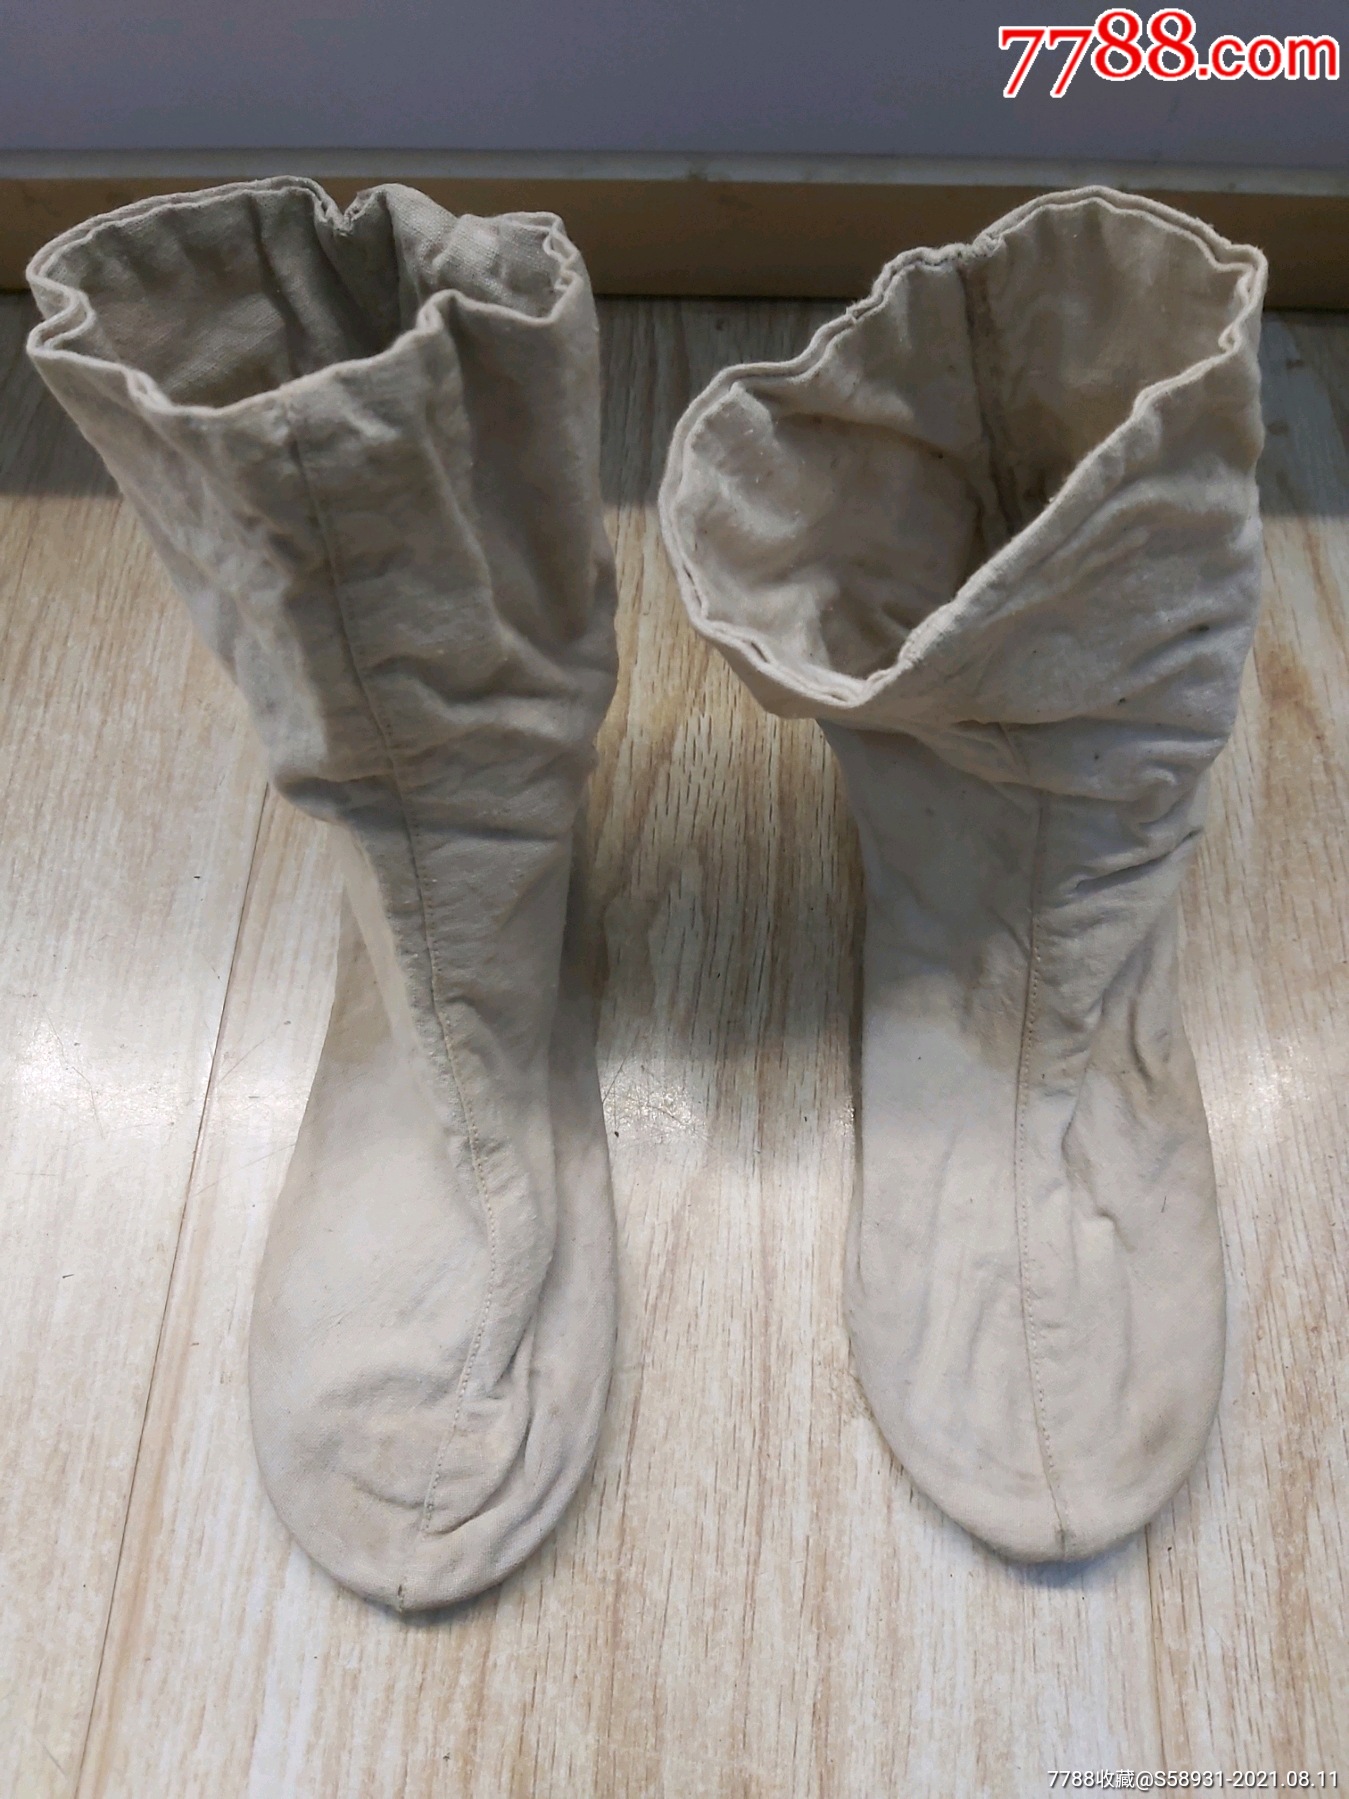 日本袜子古代图片